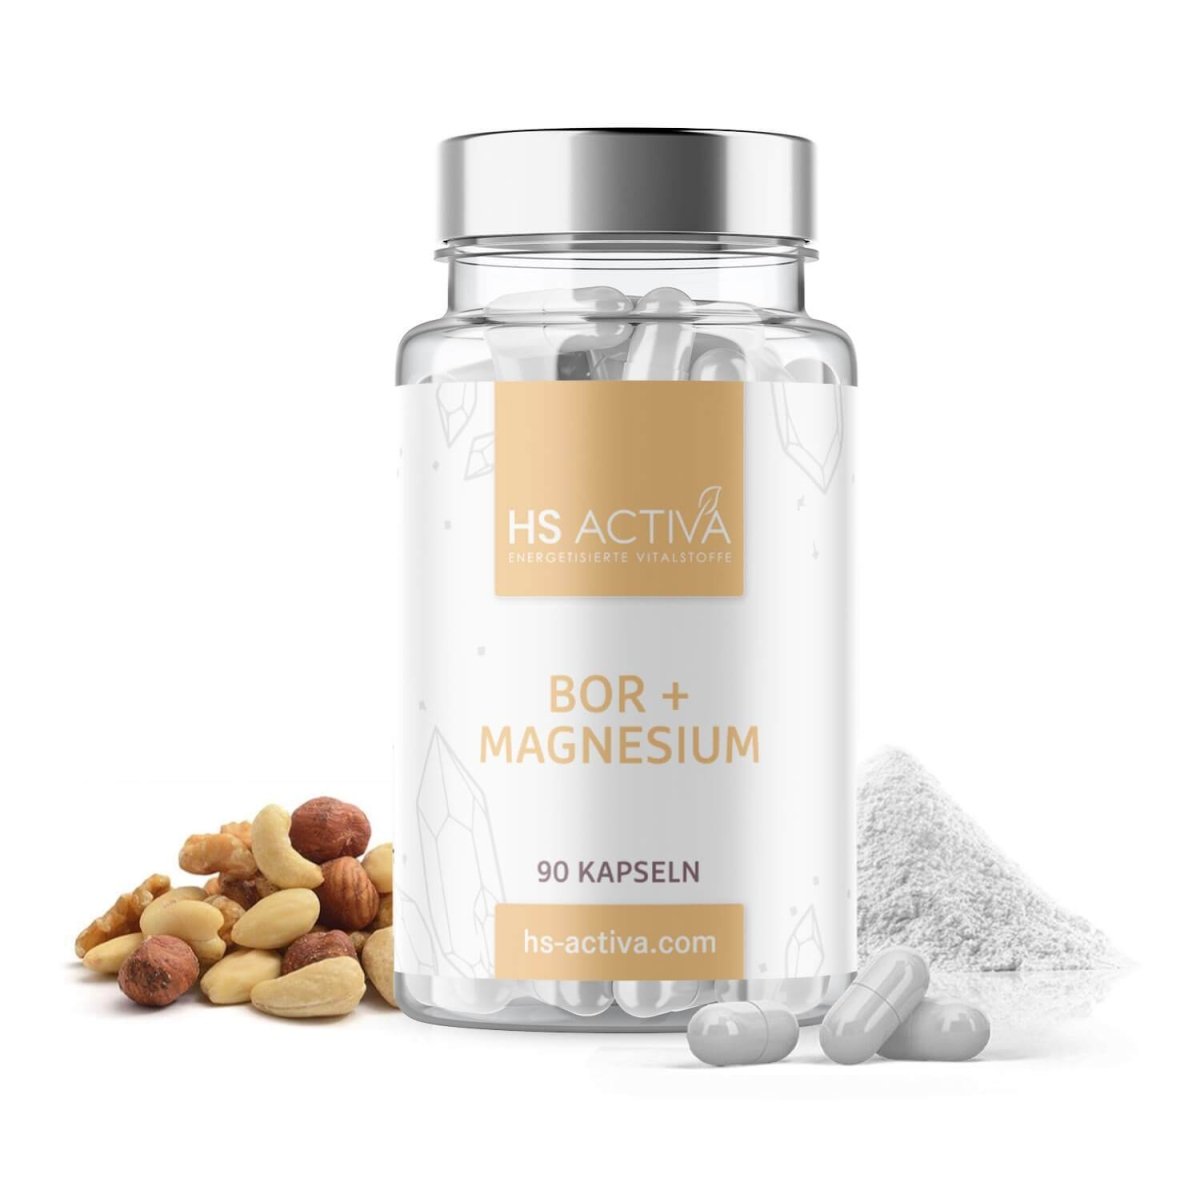 Bor + Magnesium (90 Kapseln) - HS Activa